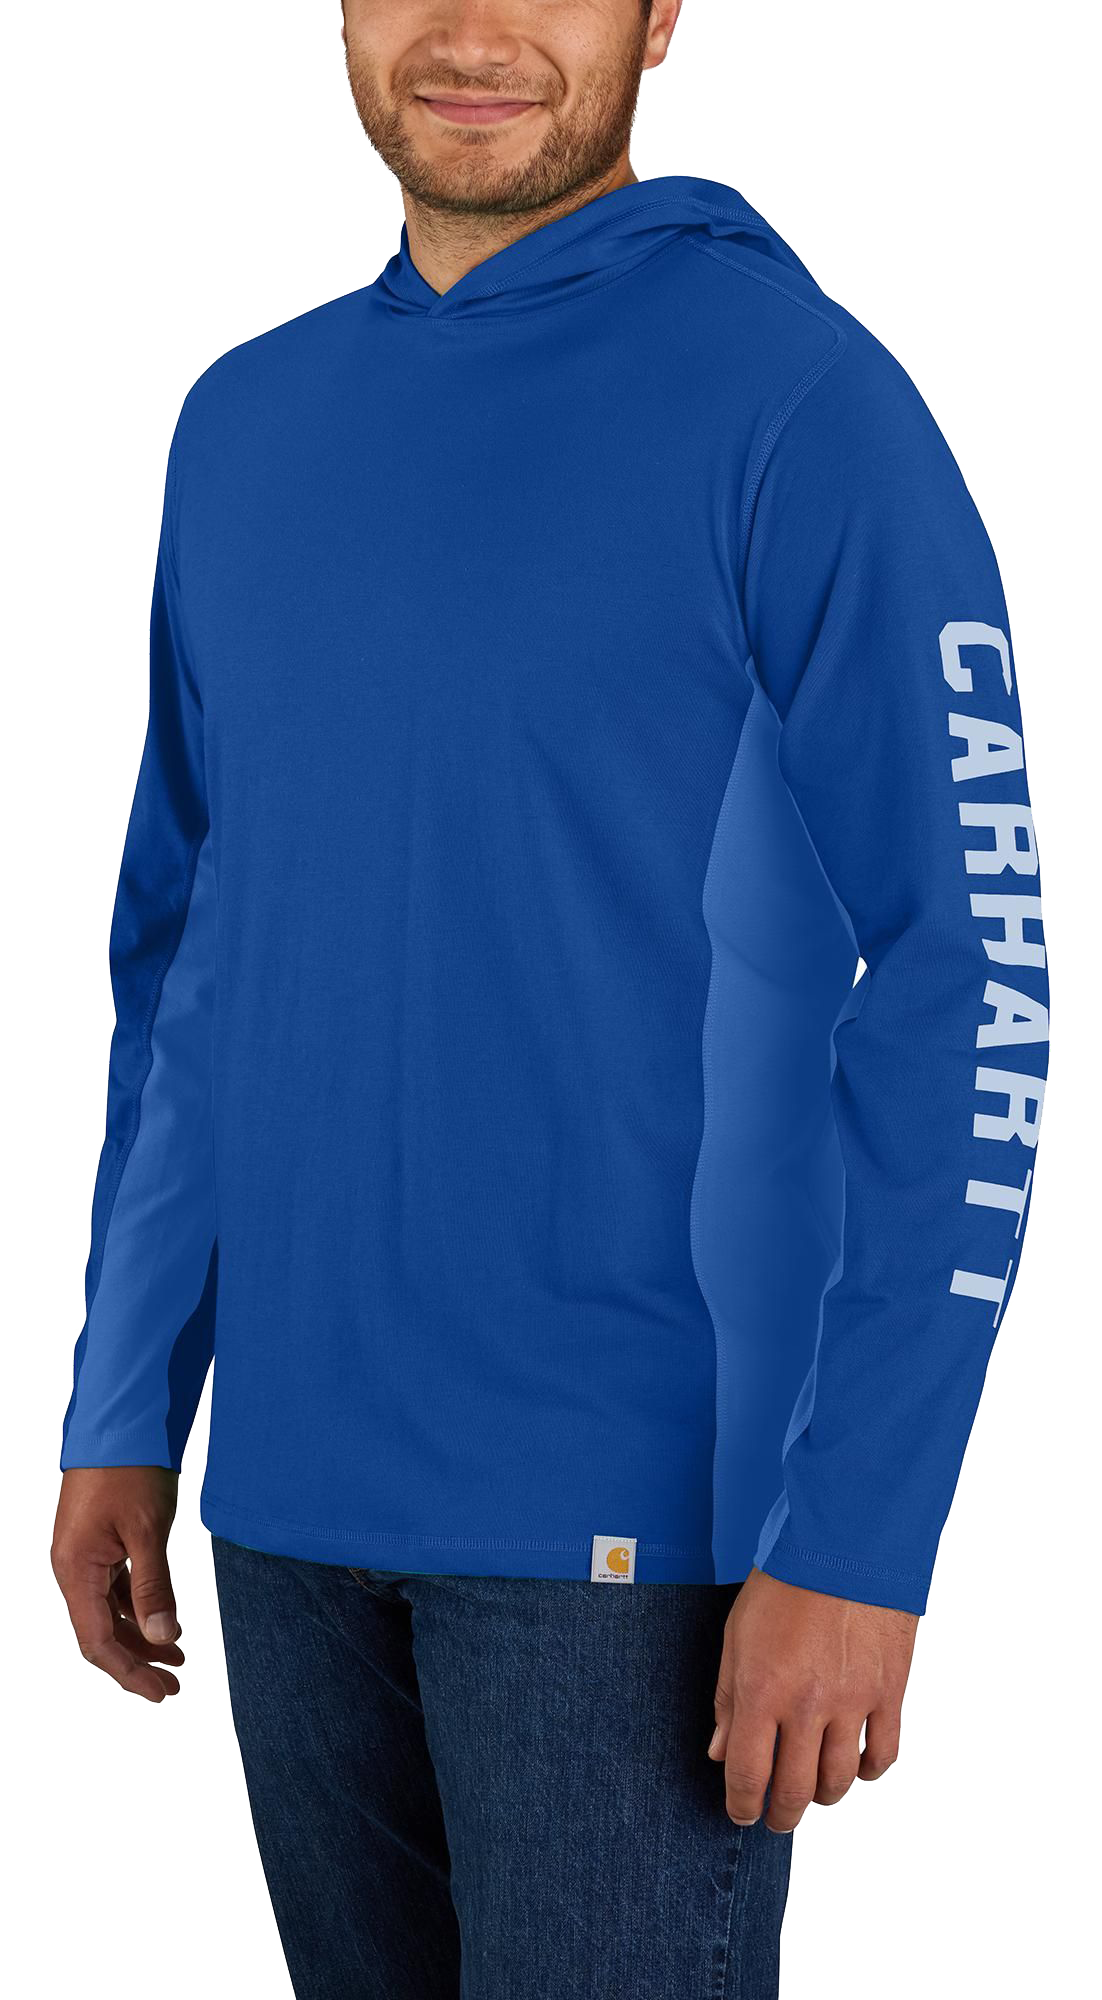 Carhartt Force Logo Hooded Long-Sleeve T-Shirt for Men